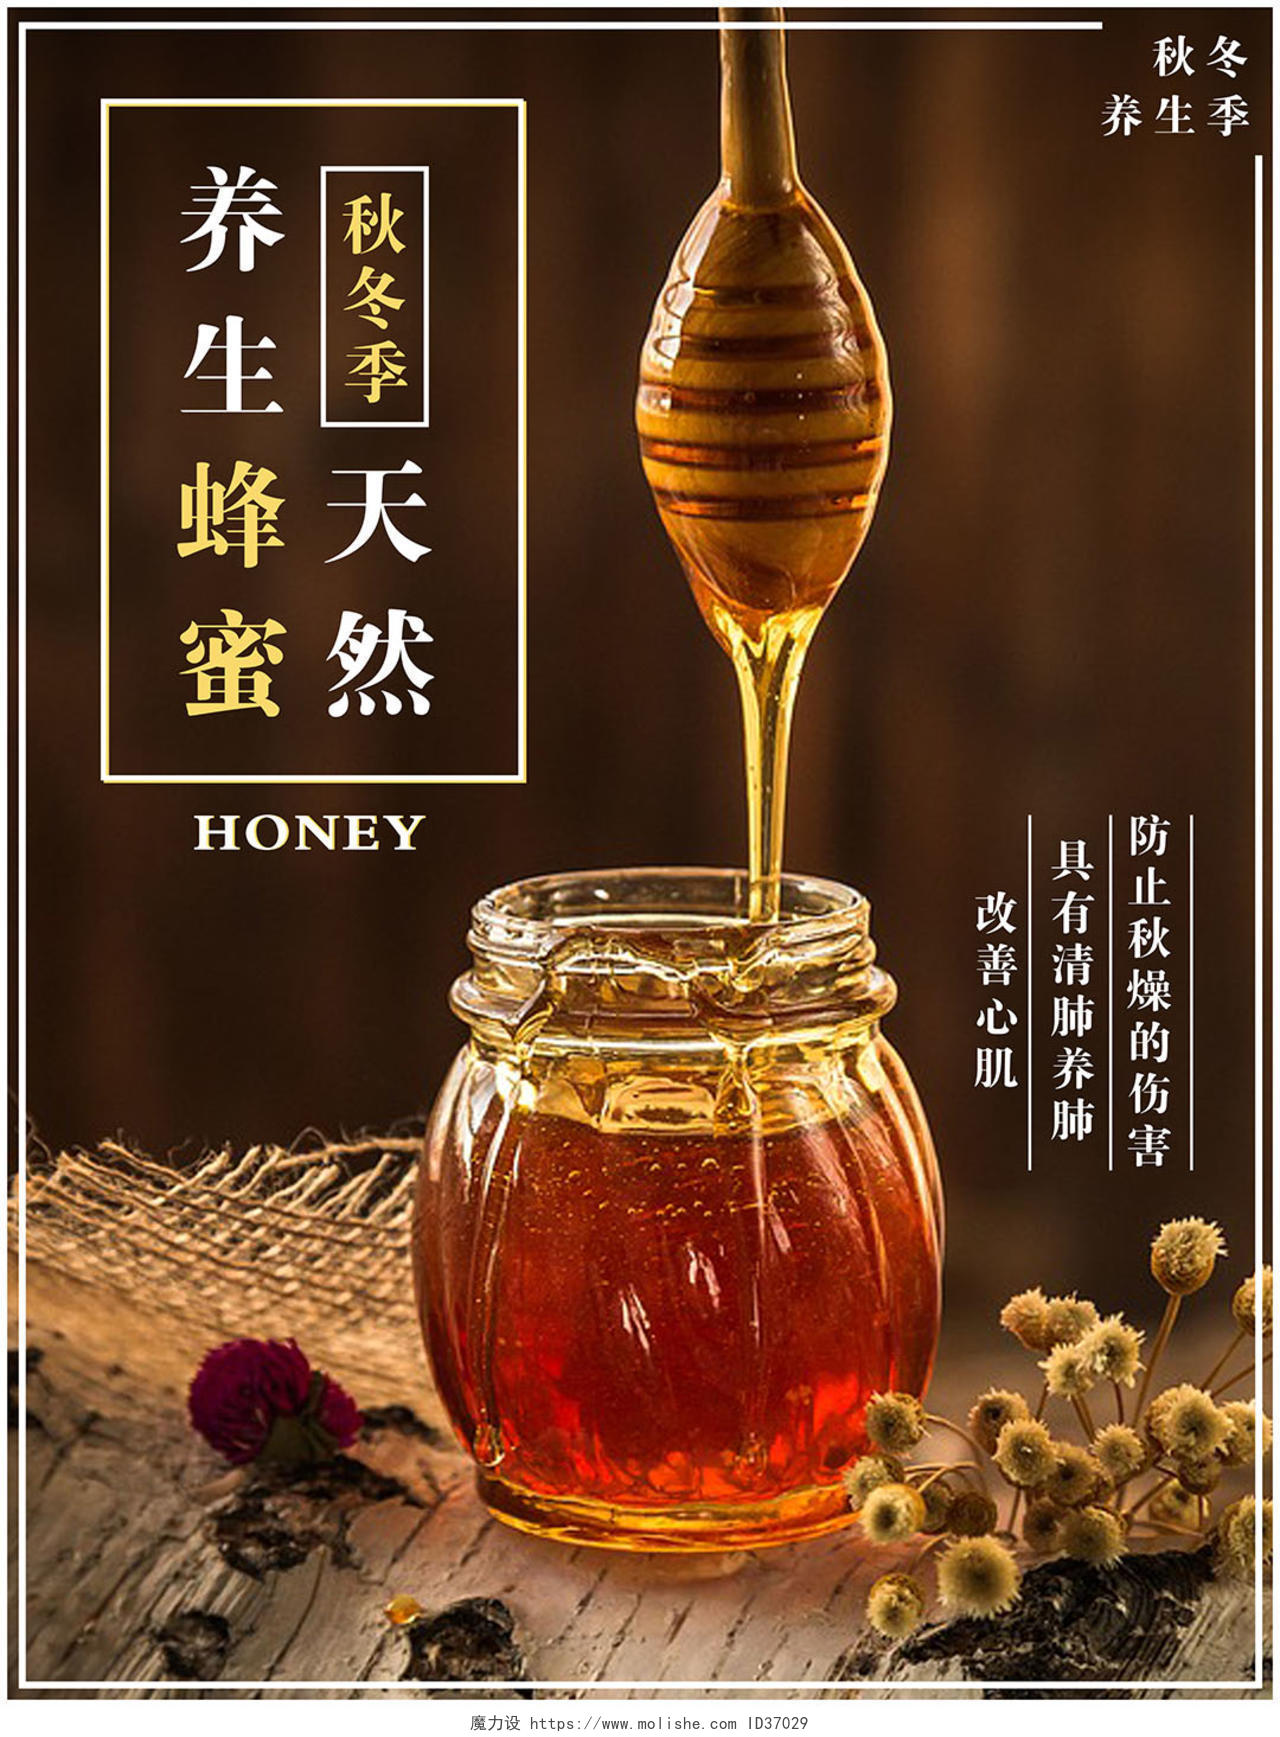 秋冬季天然养生蜂蜜产品宣传海报